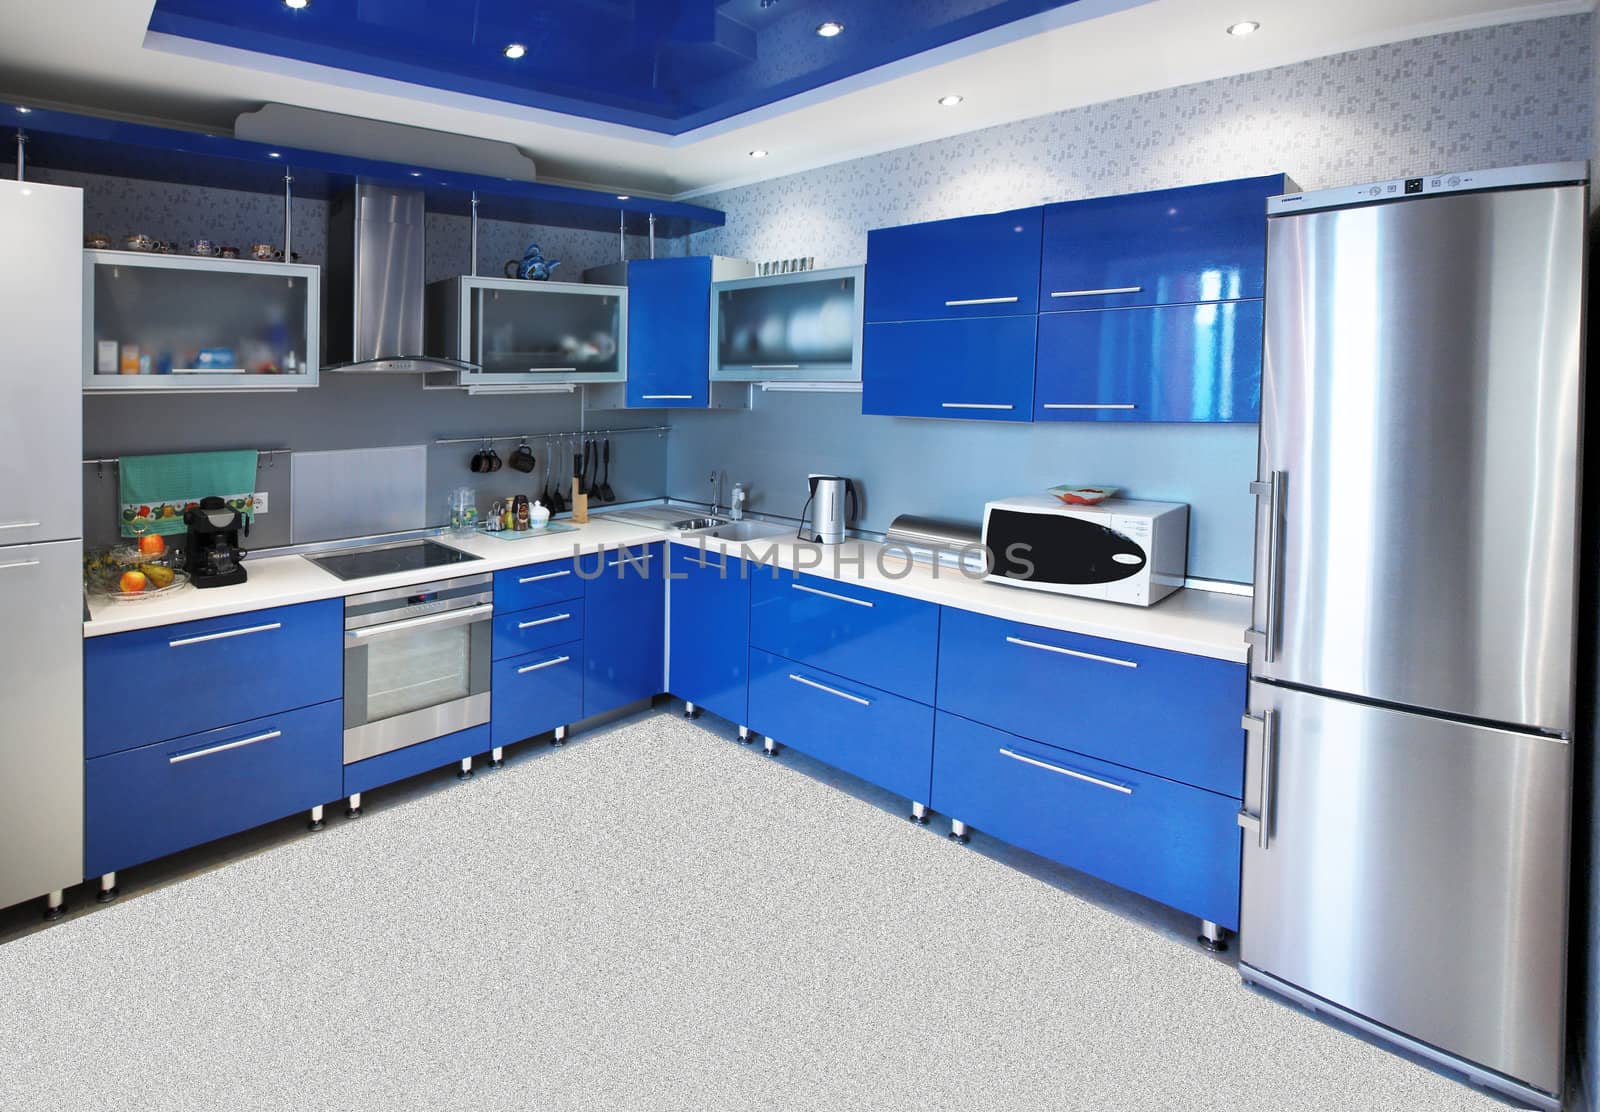 Modern kitchen interior in blue tones by palomnik